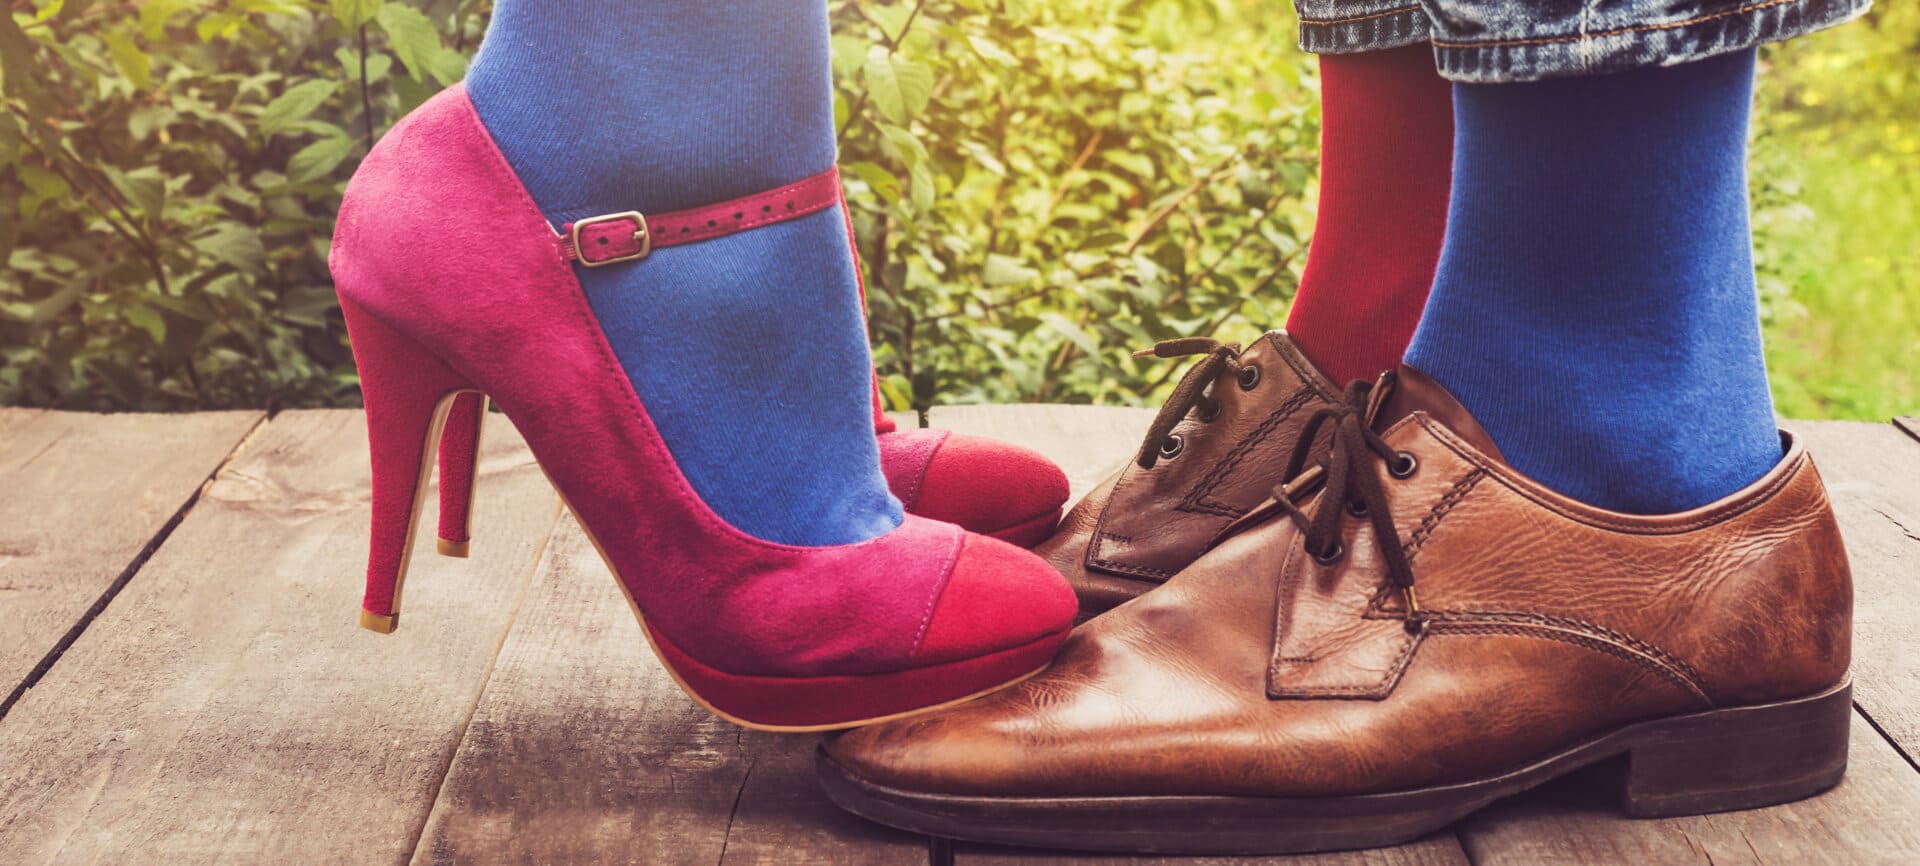 Mann und Frau, Füße in Unisex Socken